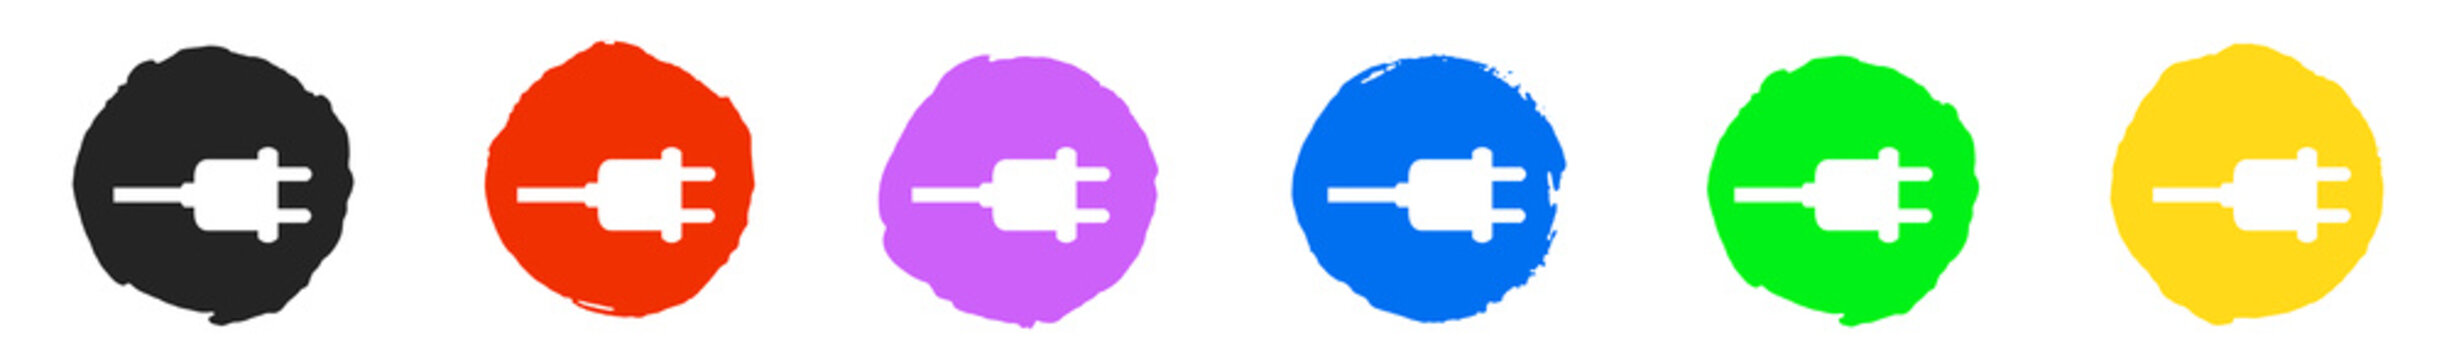 Bunte Stecker Icon Buttons - Aufladen, Ladesäule, Strom oder Steckdose